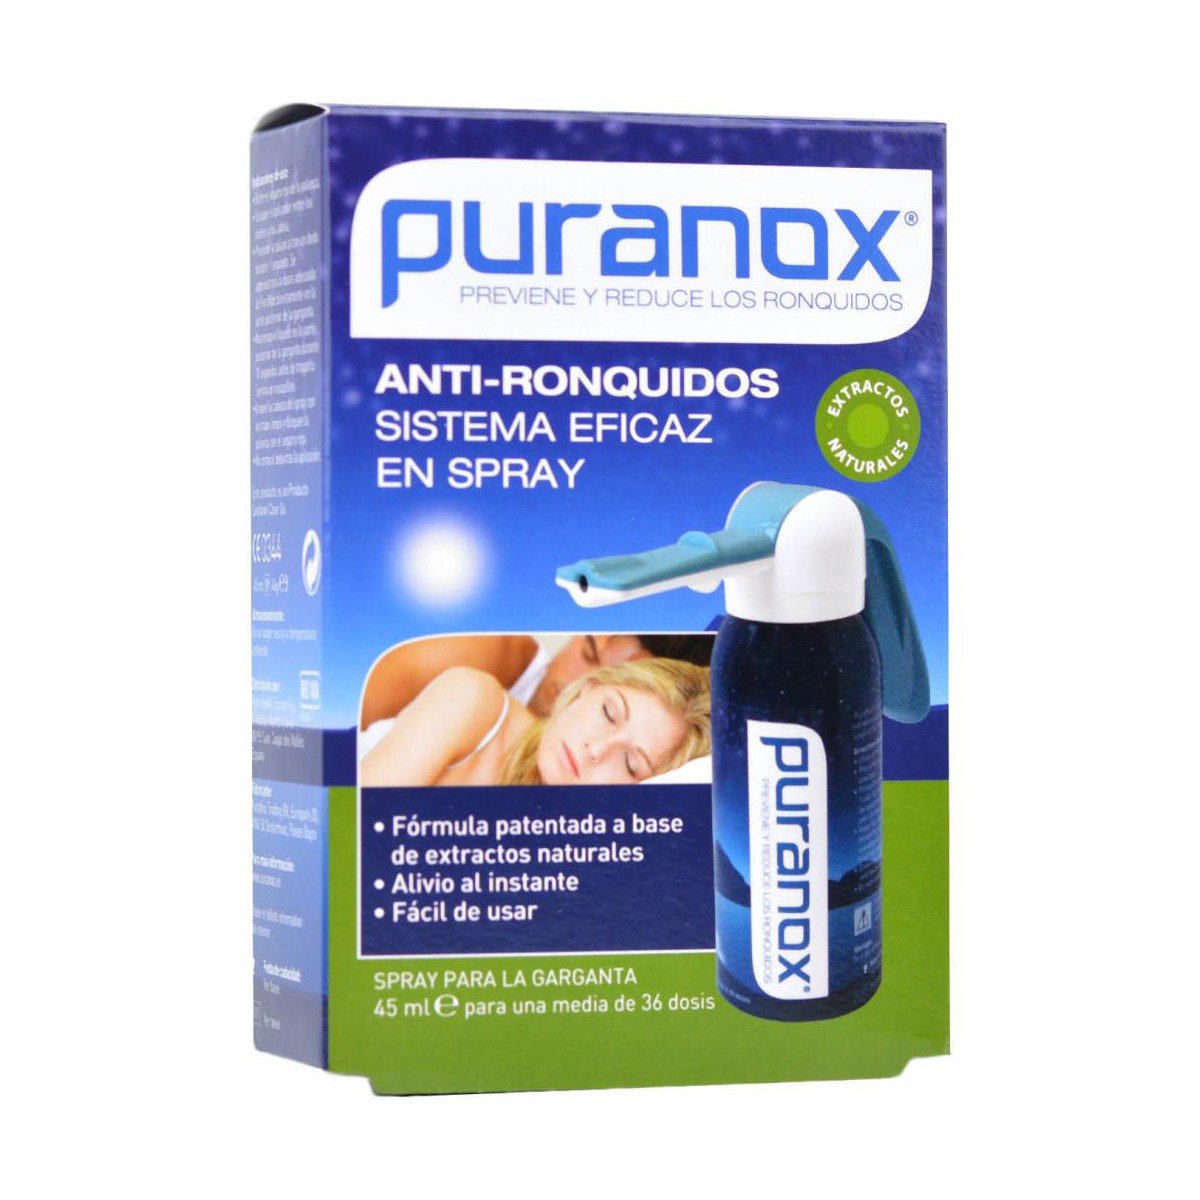 PURANOX ANTIRRONQUIDOS 45 ML